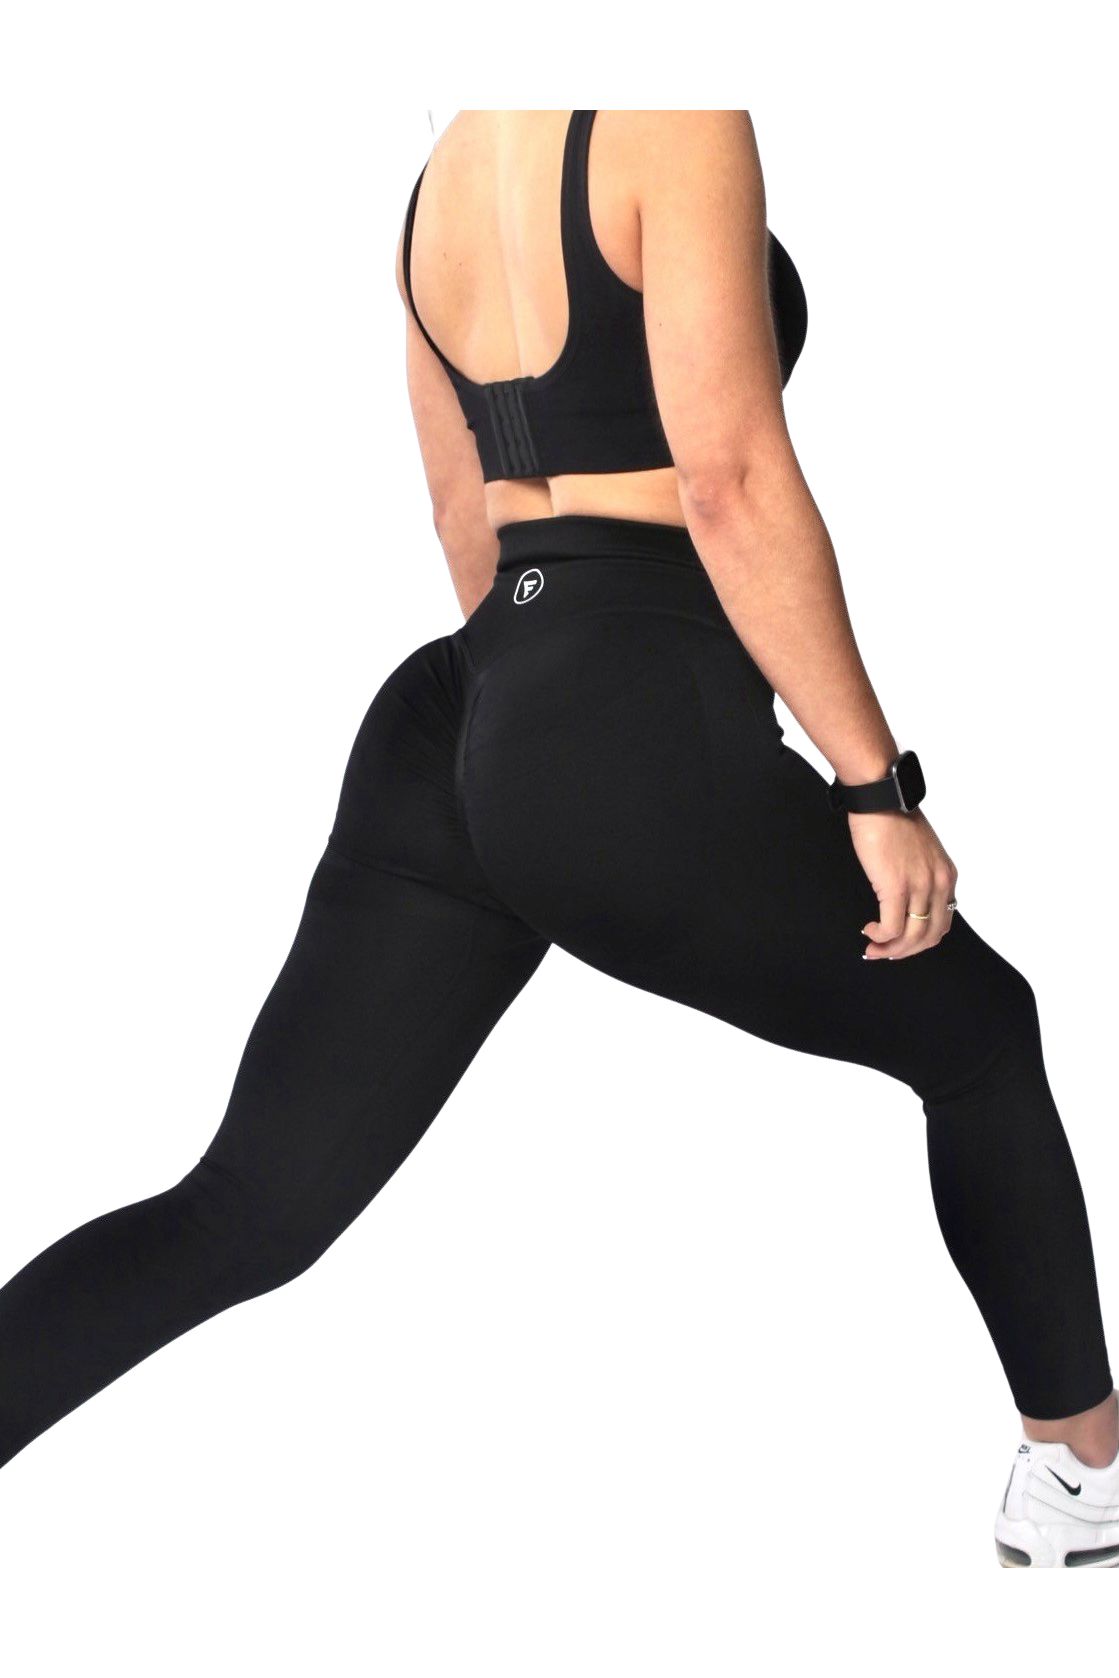 Fitness Leggings For Women Butt Lifting Leggings Workout Scrunch